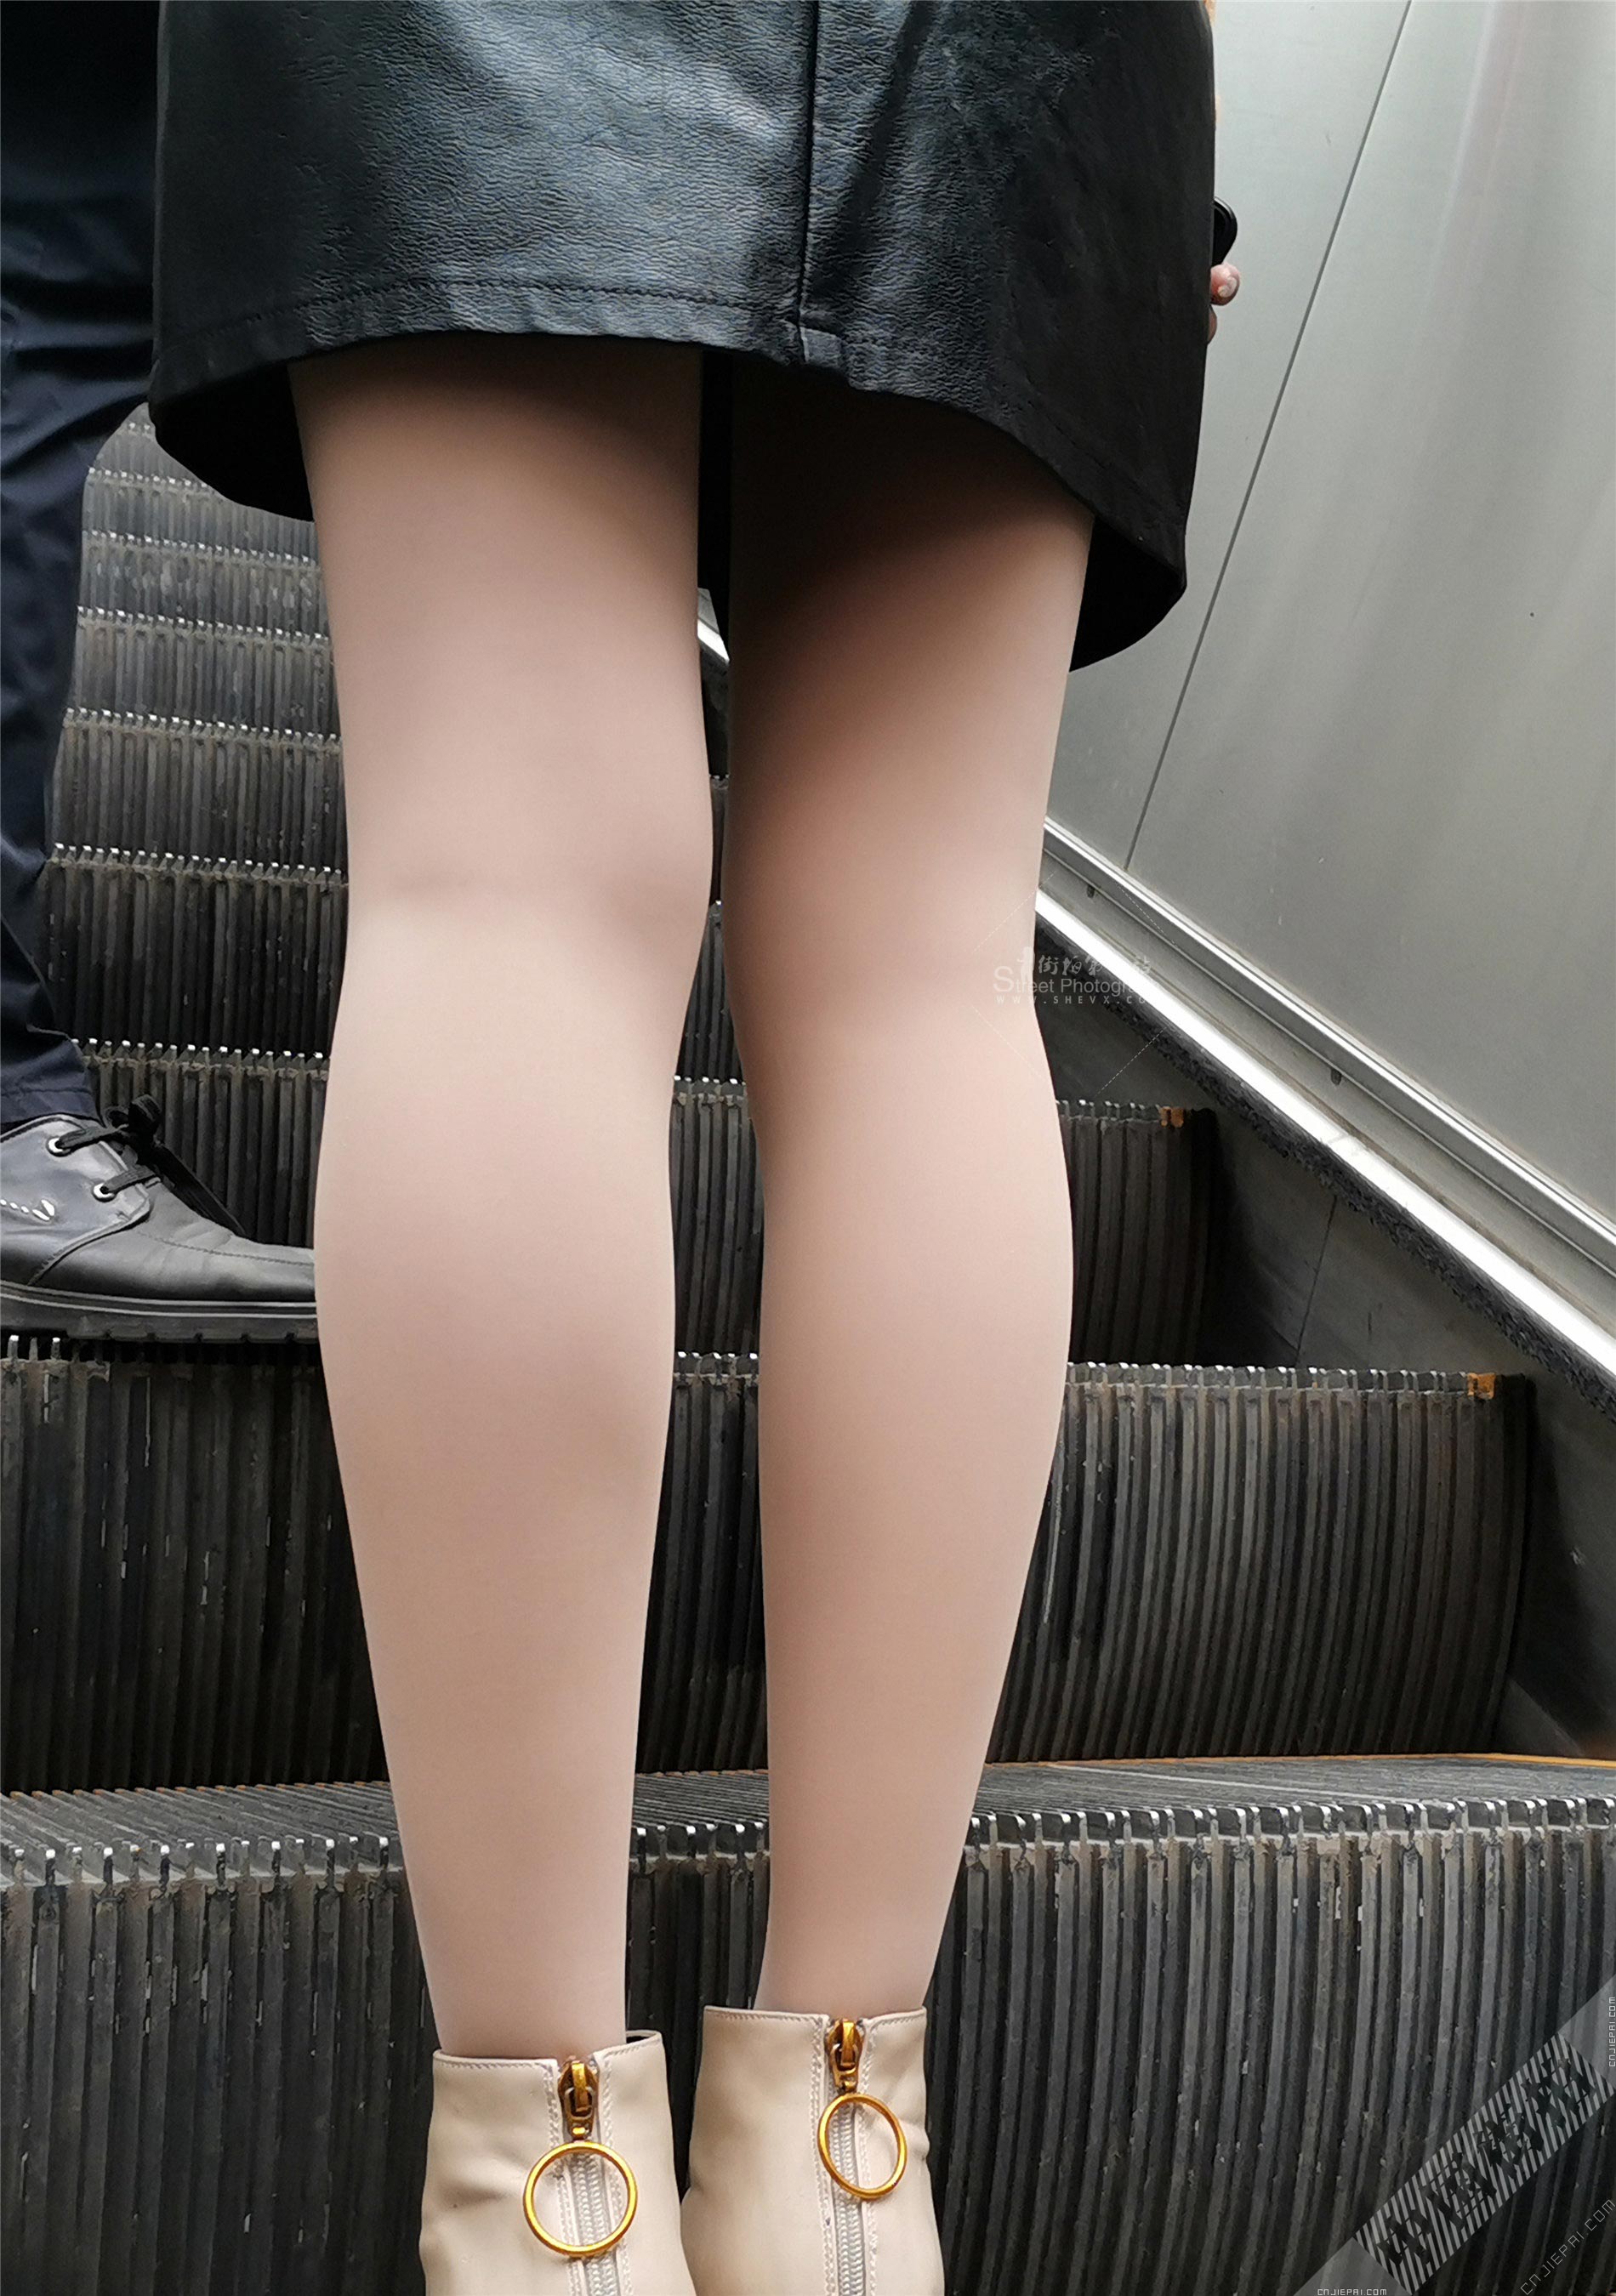 抓拍电梯上厚肉丝少妇光滑的双腿 图8